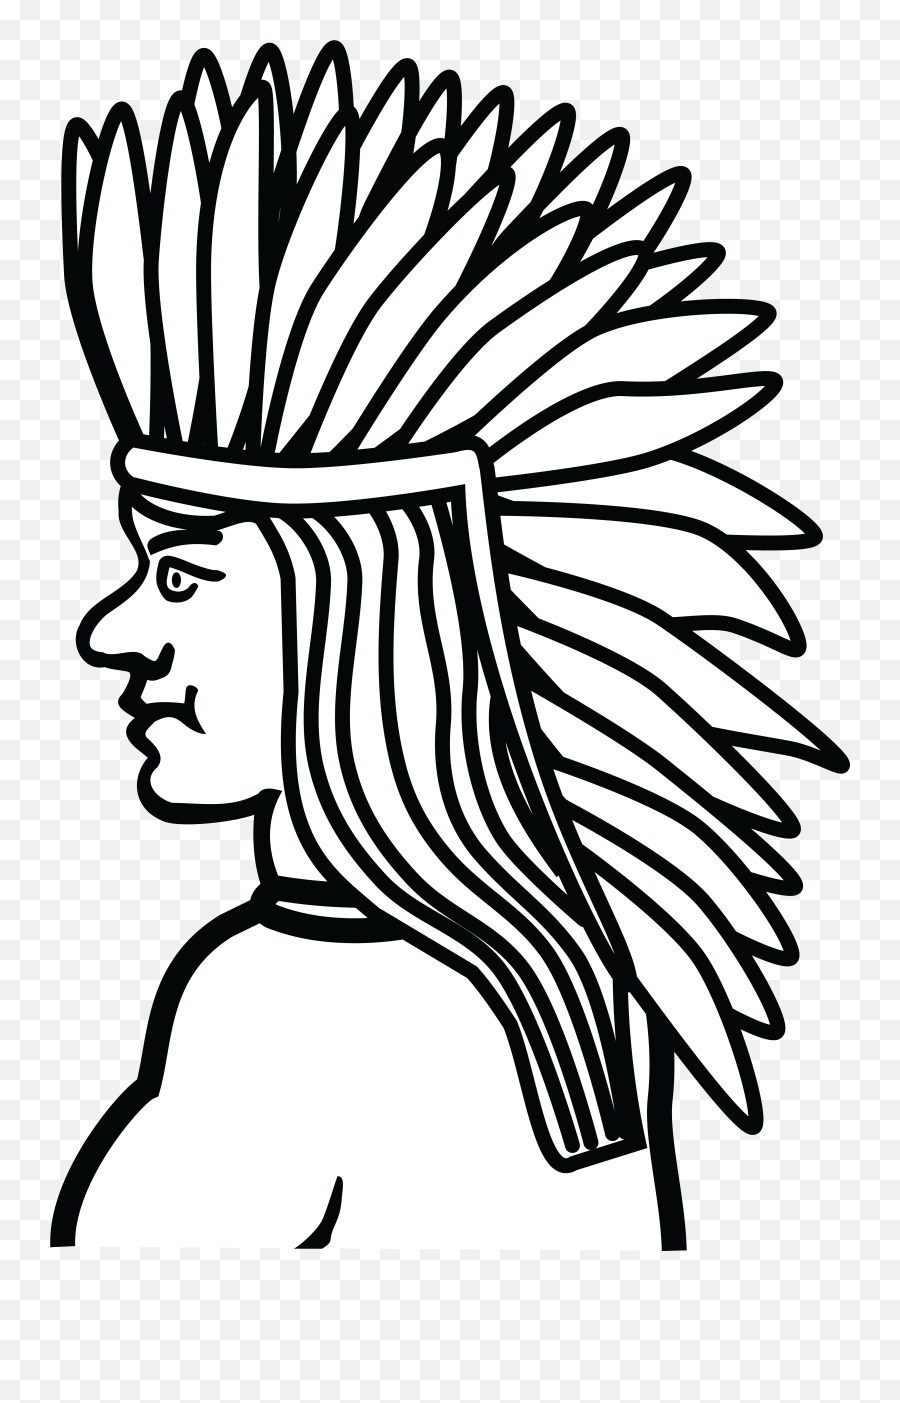 Free Clipart Of A Native American Indian - Indigenous Mascota De Los Indigenas Emoji,Native American Clipart